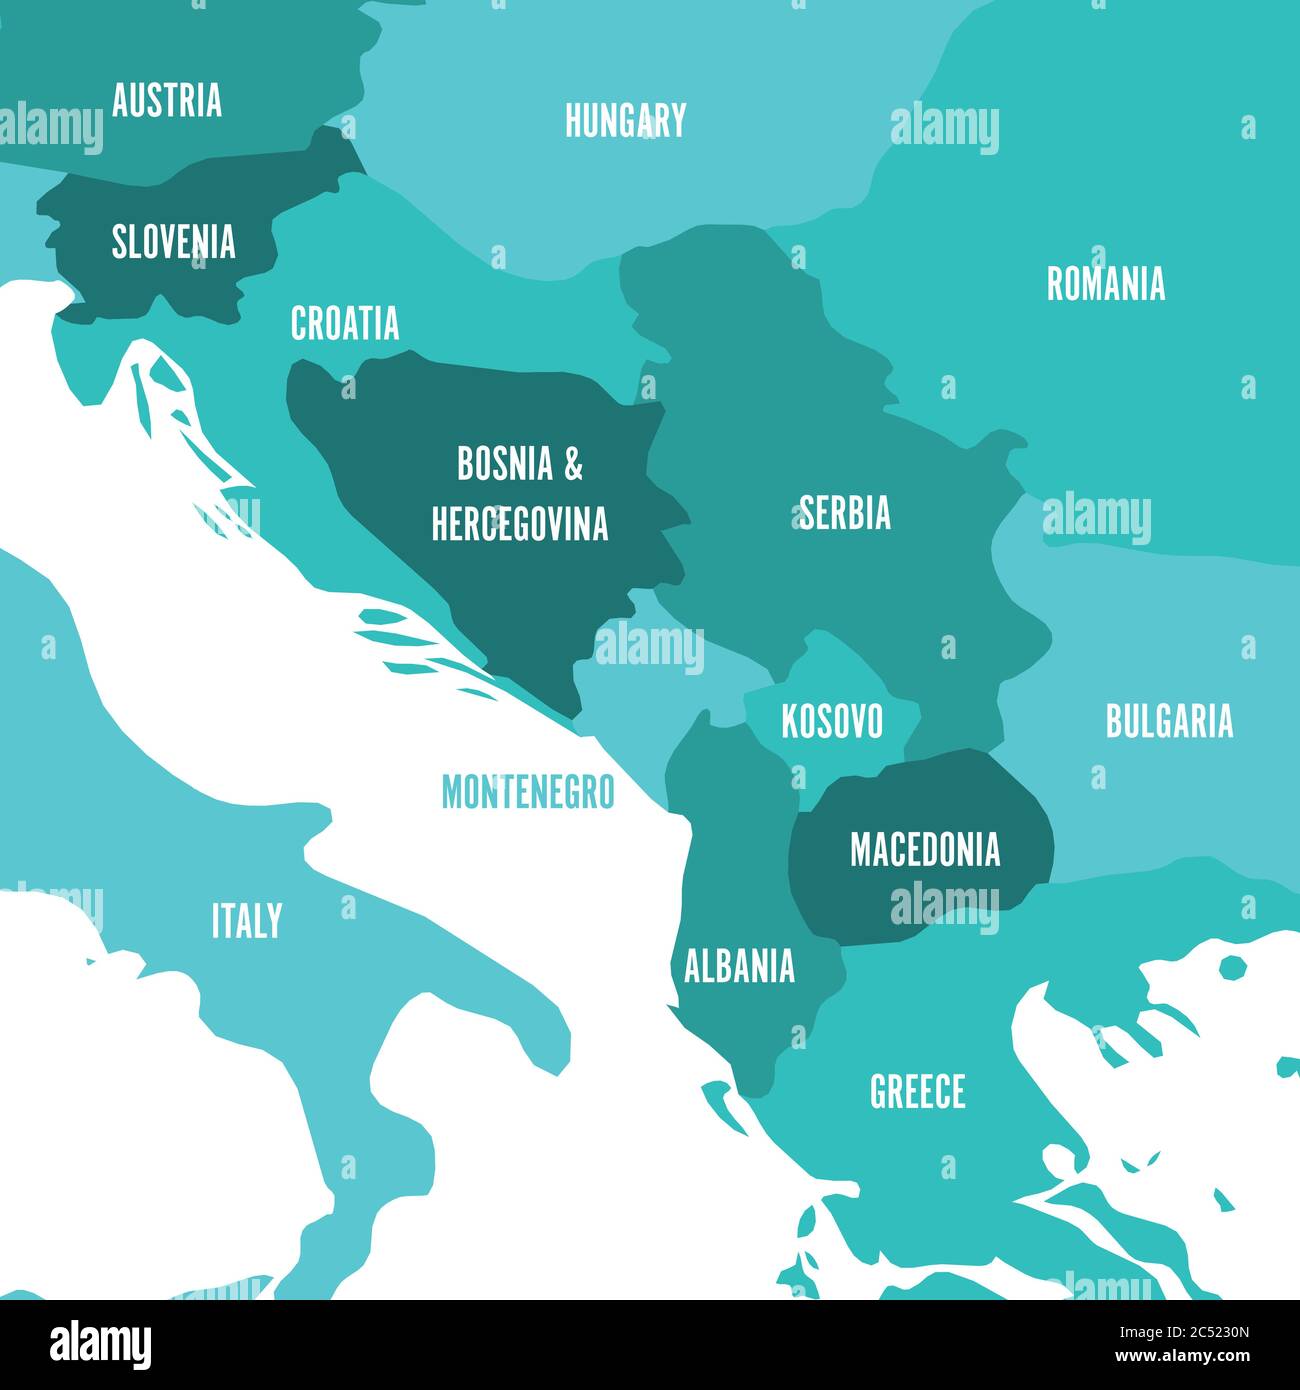 Politische Landkarte des Balkans - Staaten der Balkanhalbinsel. Vier Schattierungen von türkisblauen Vektor-Illustration, Stock Vektor